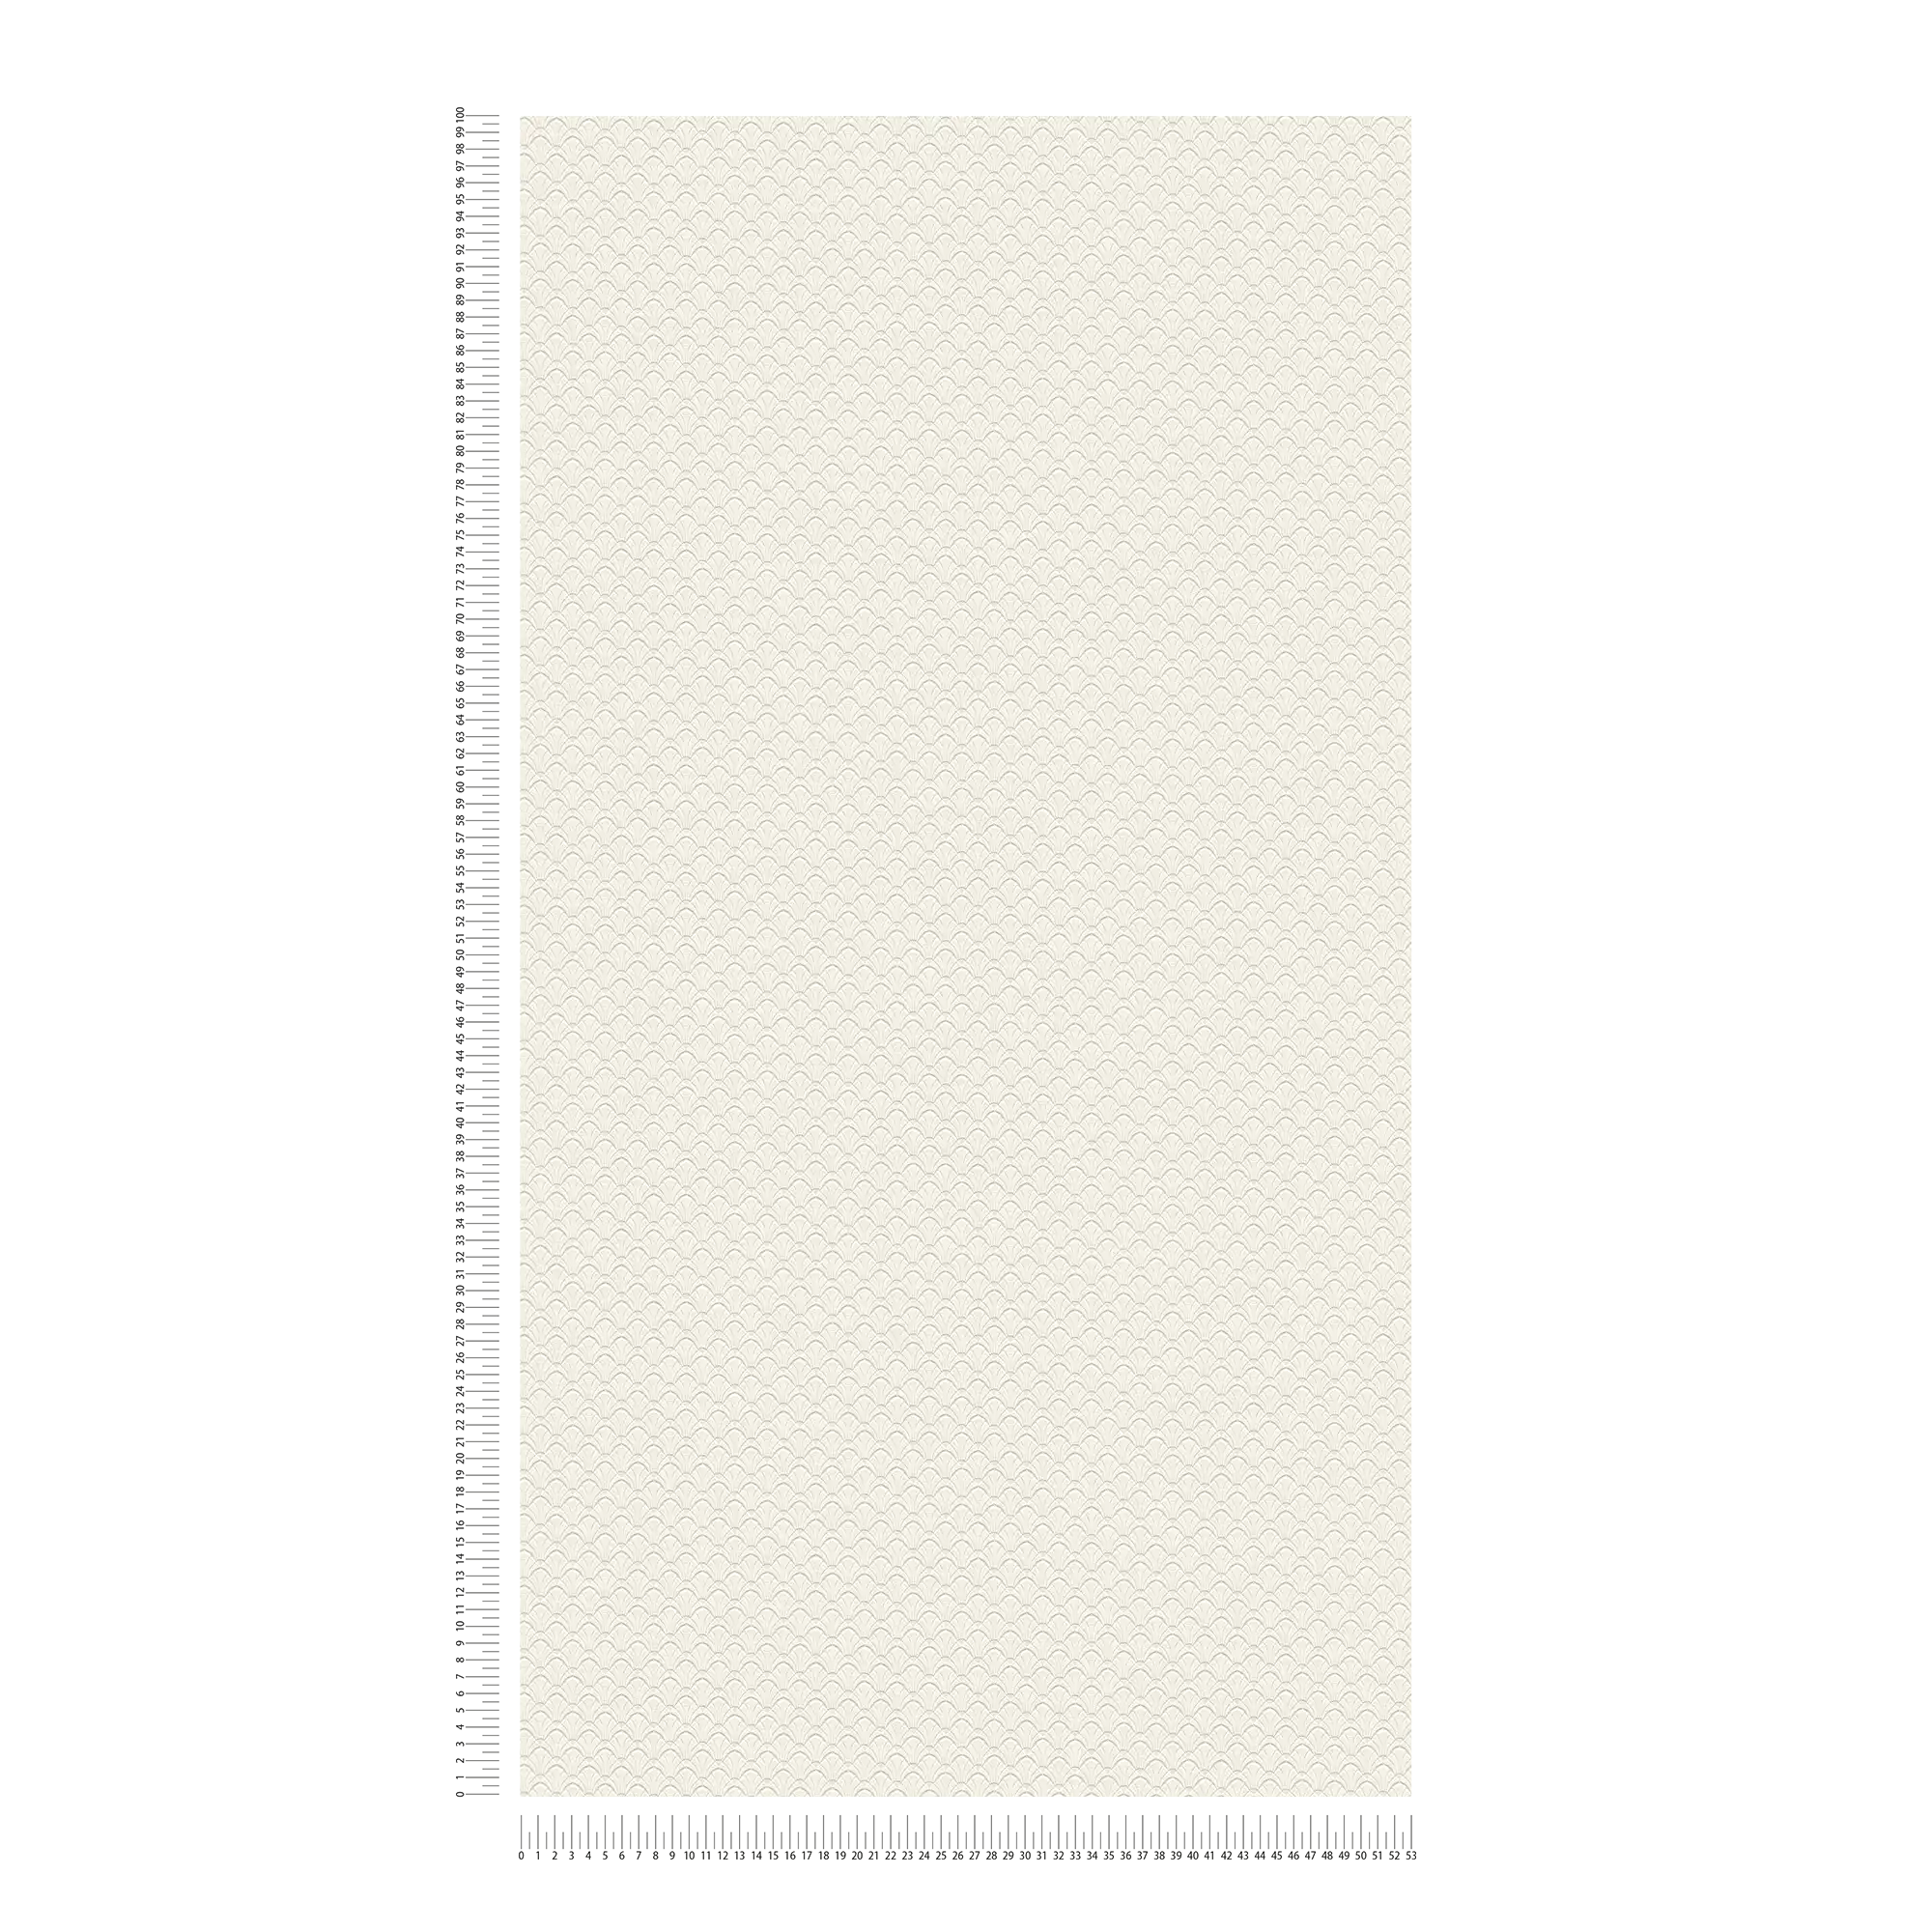             papel pintado con textura de filigrana en diseño de concha - crema, blanco
        